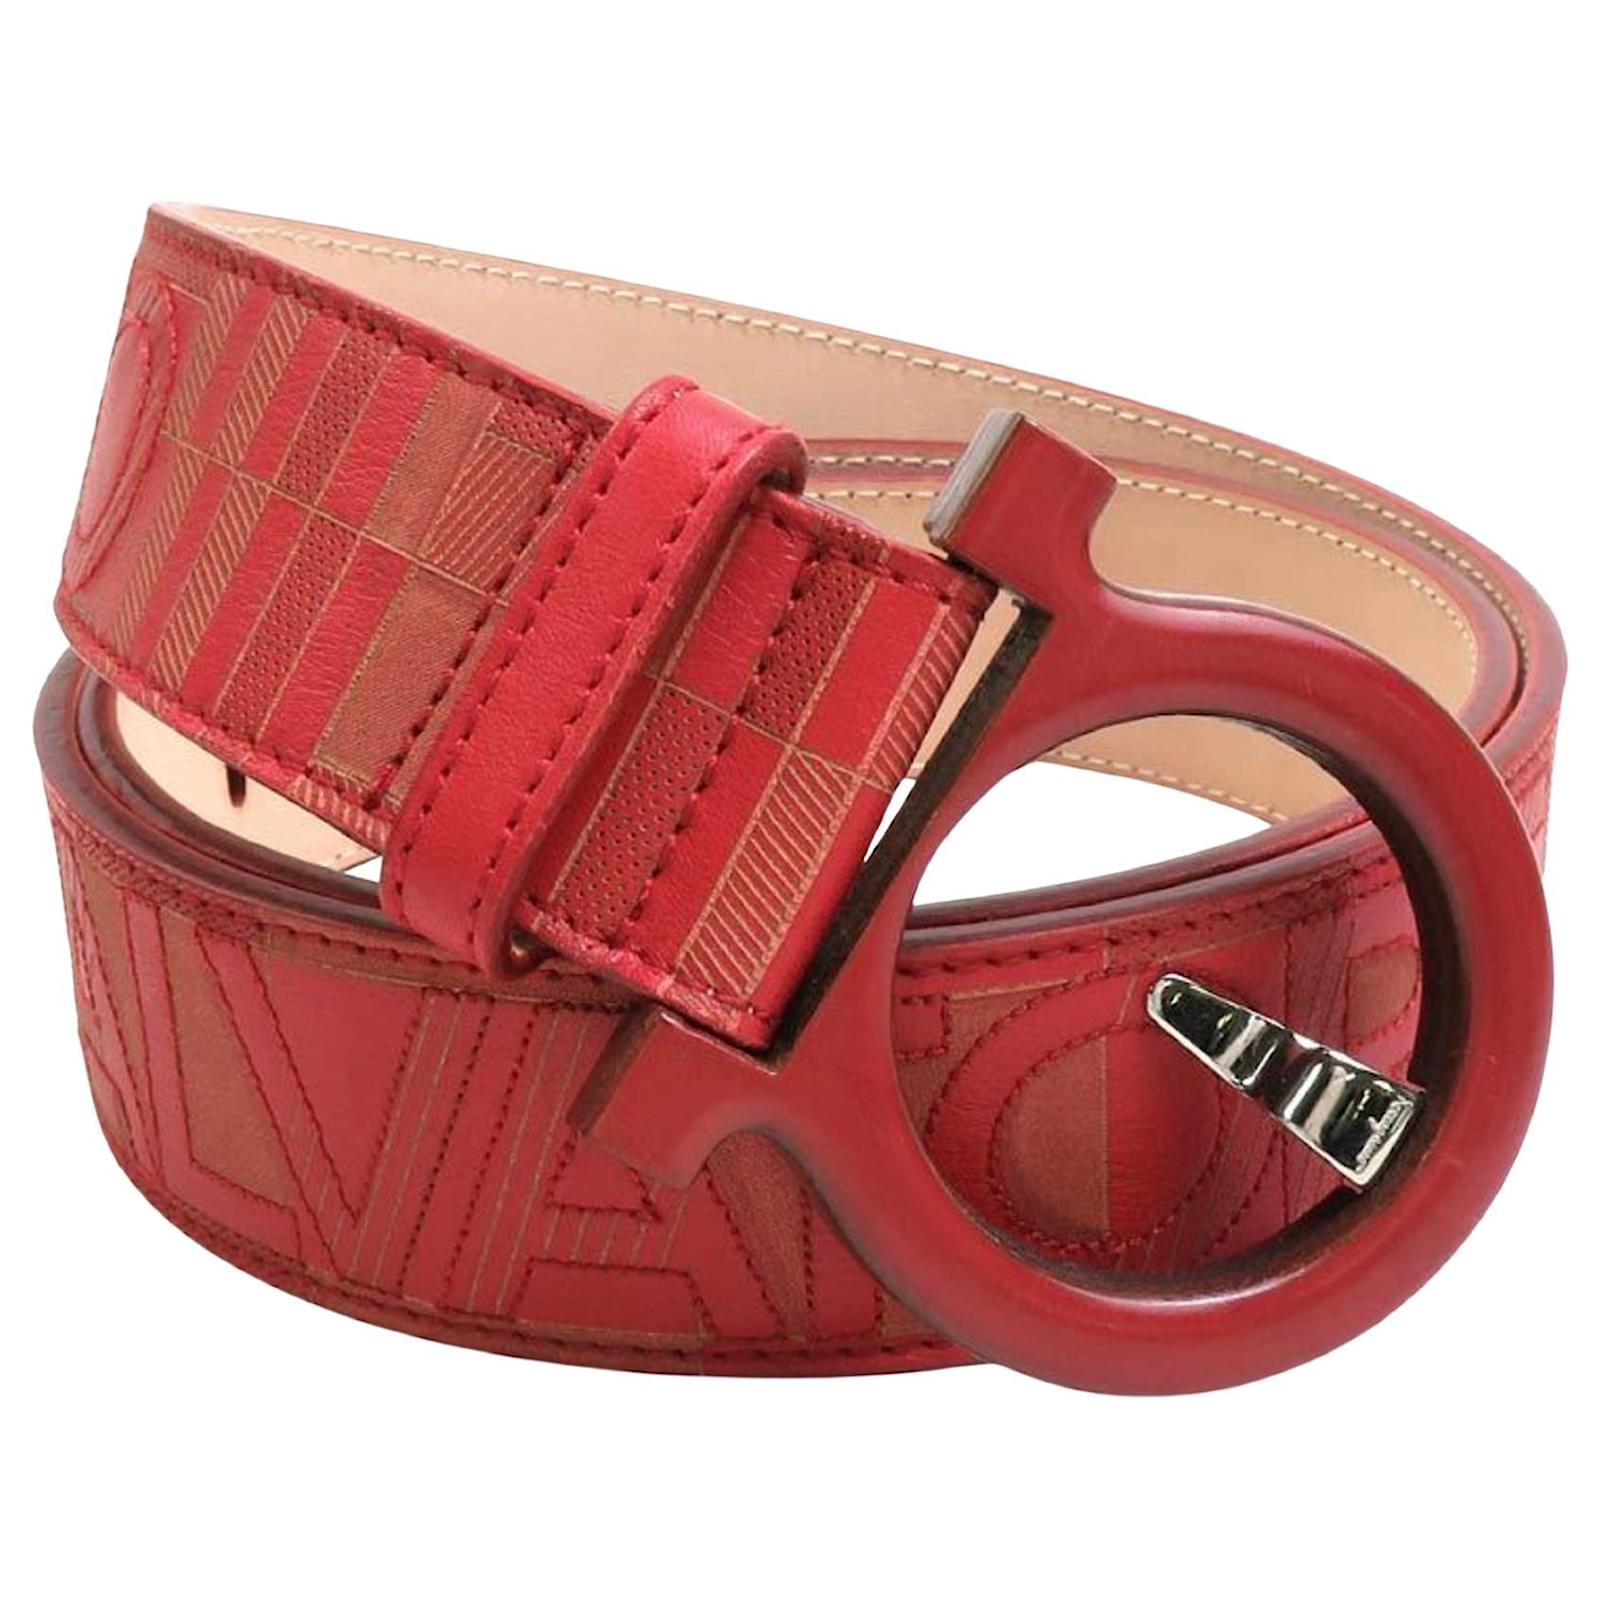 Reversible new Gancini belt, red, Belts Women's